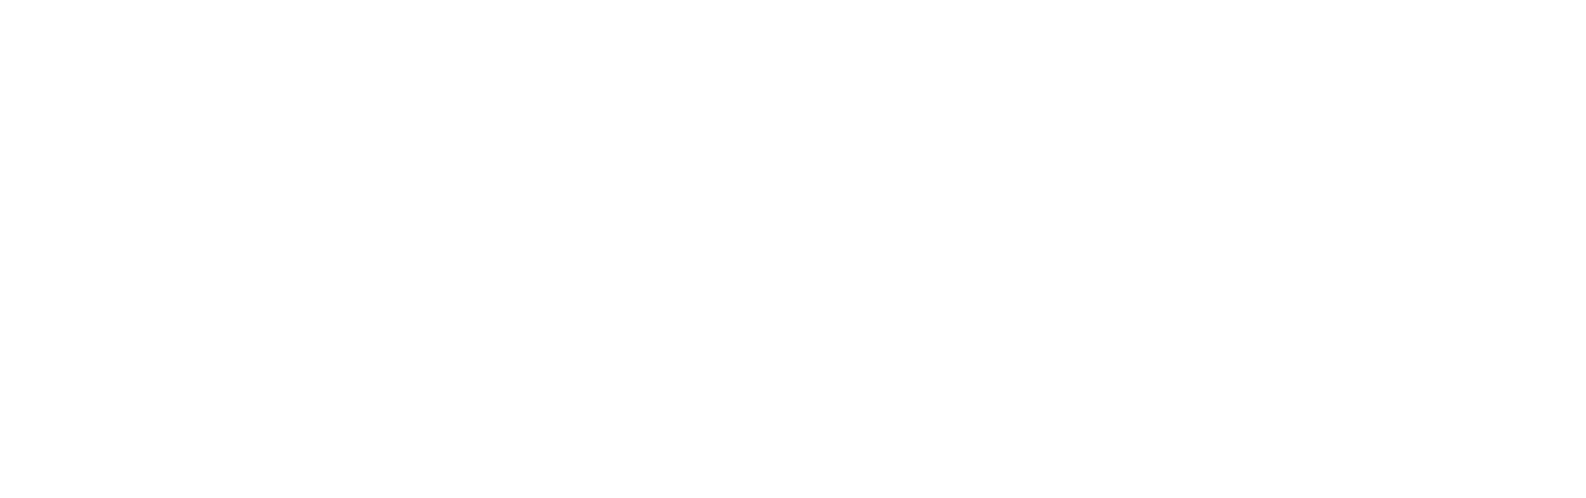 Remgro Limited logo grand pour les fonds sombres (PNG transparent)